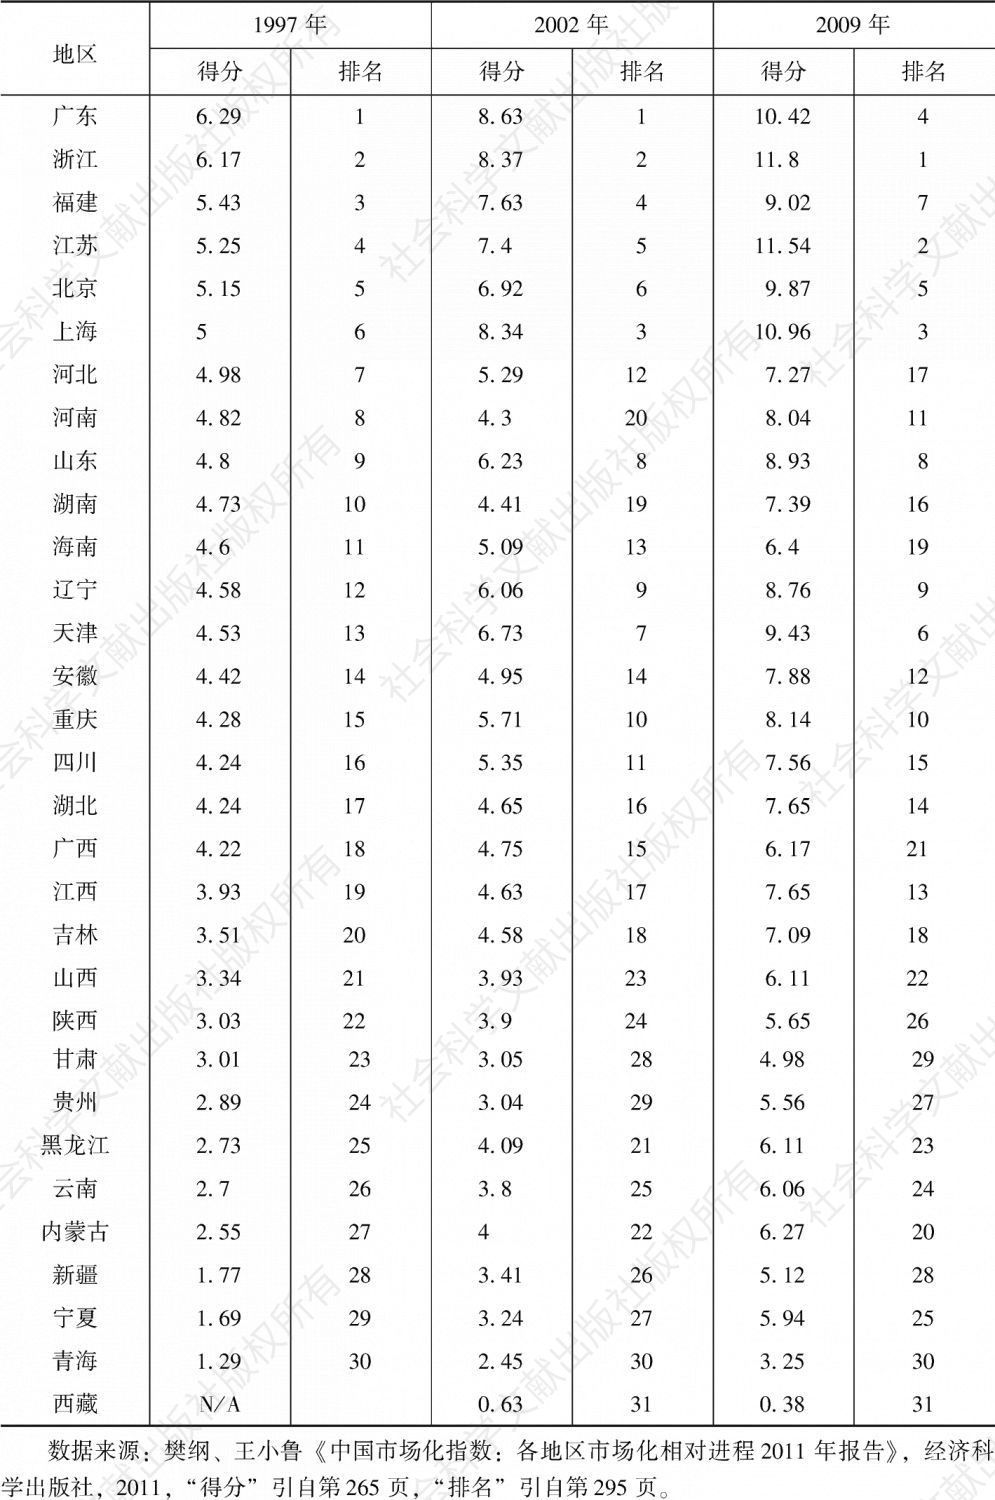 表6-1 中国各地区市场化指数